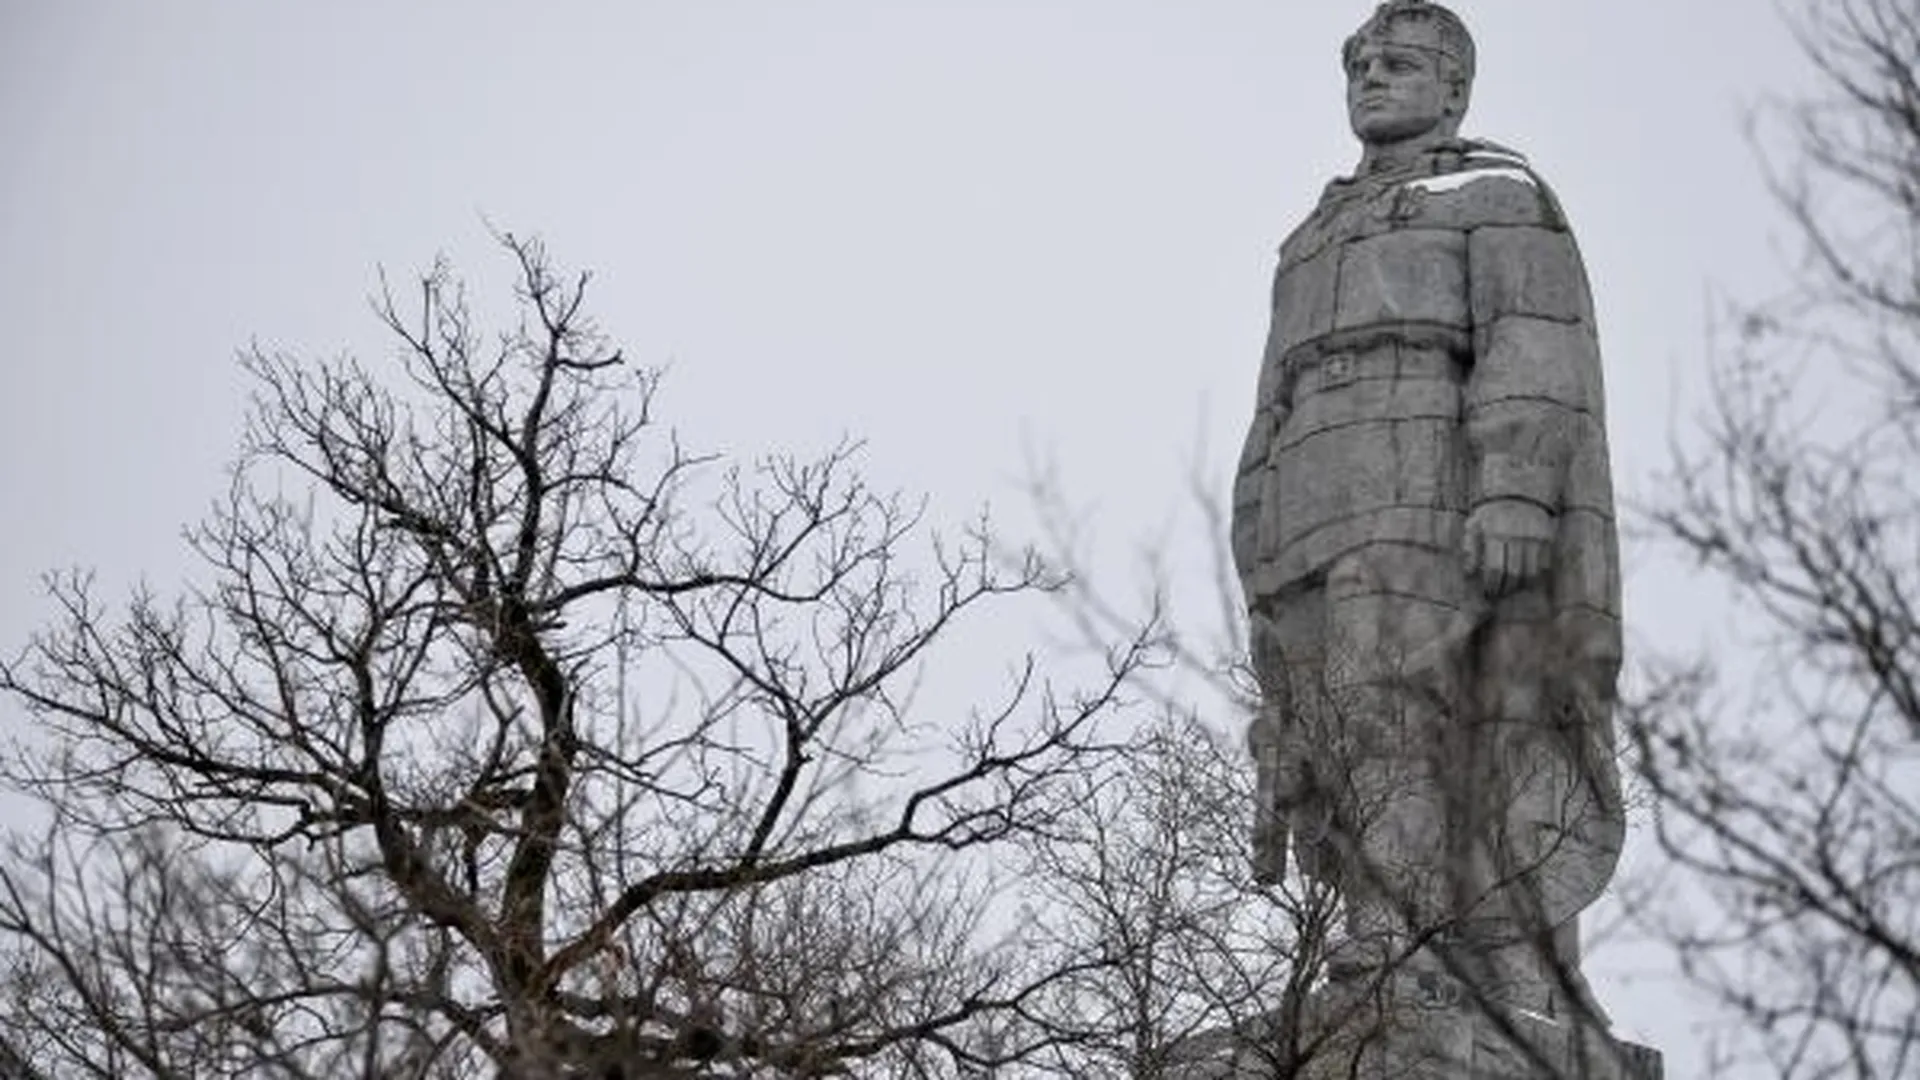 Памятник «Алеша» в Пловдиве предложили перенести в Софию